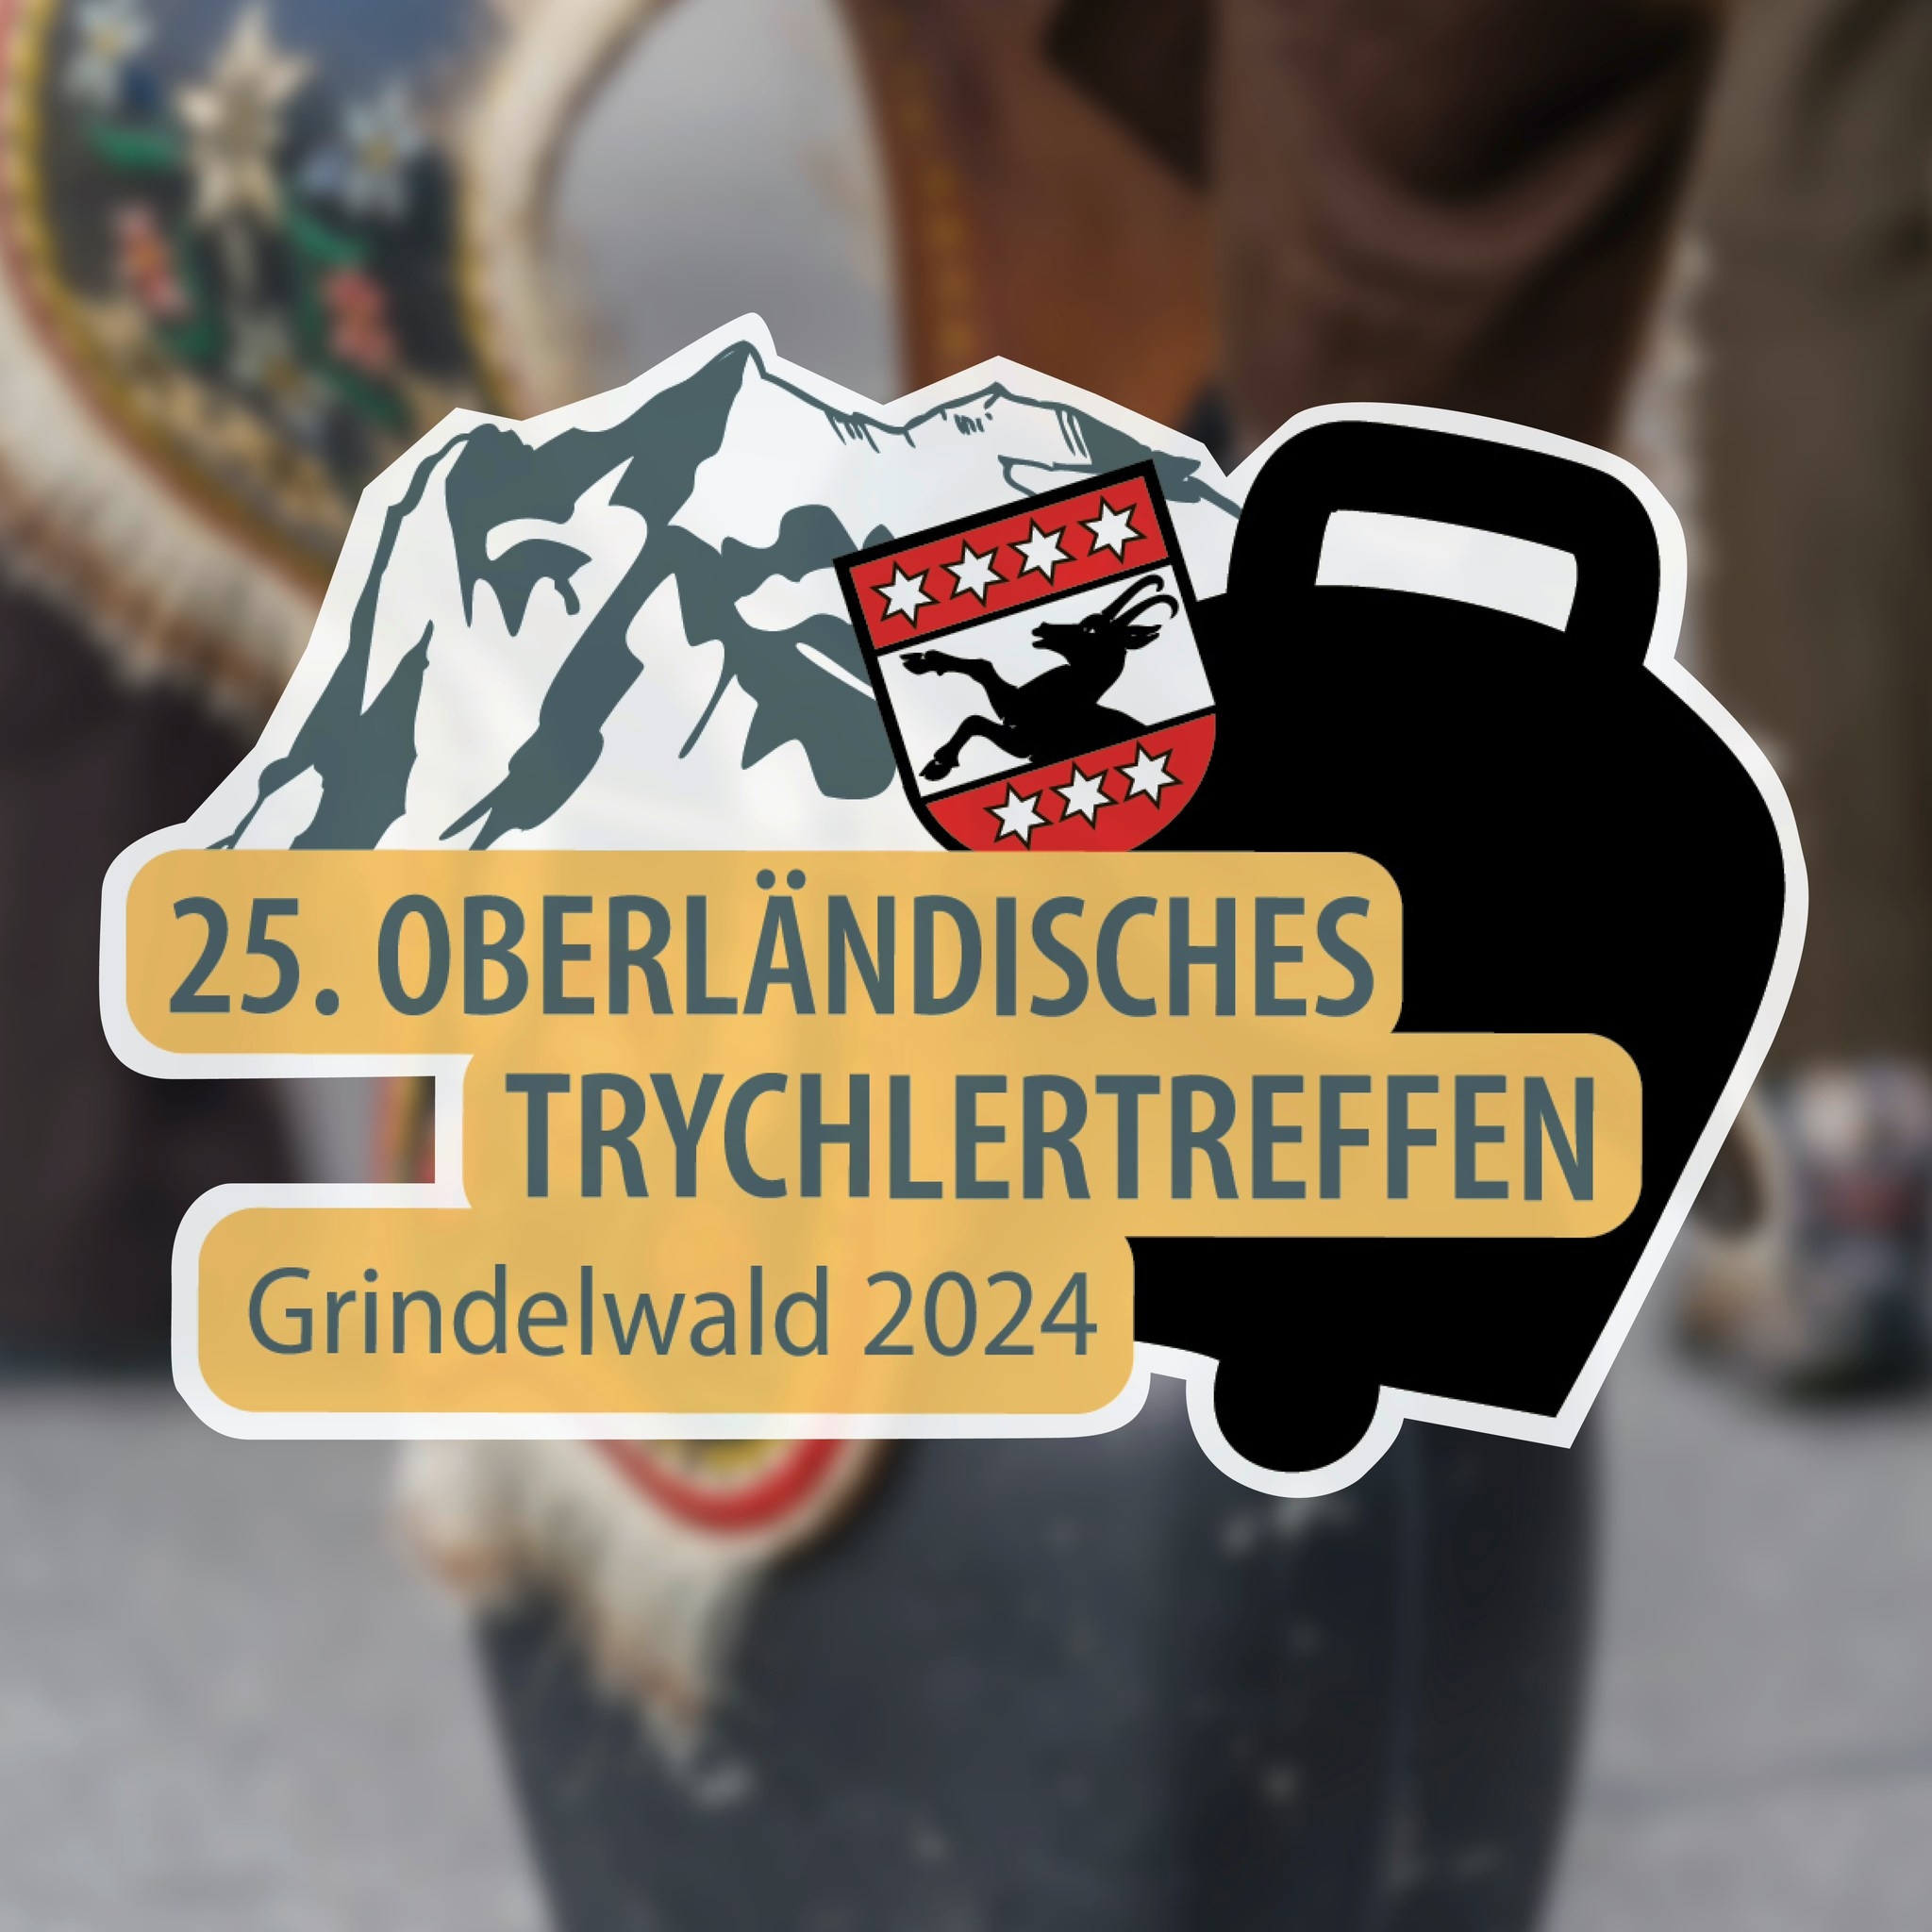 Oberländisches Trychlertreffen in Grindelwald